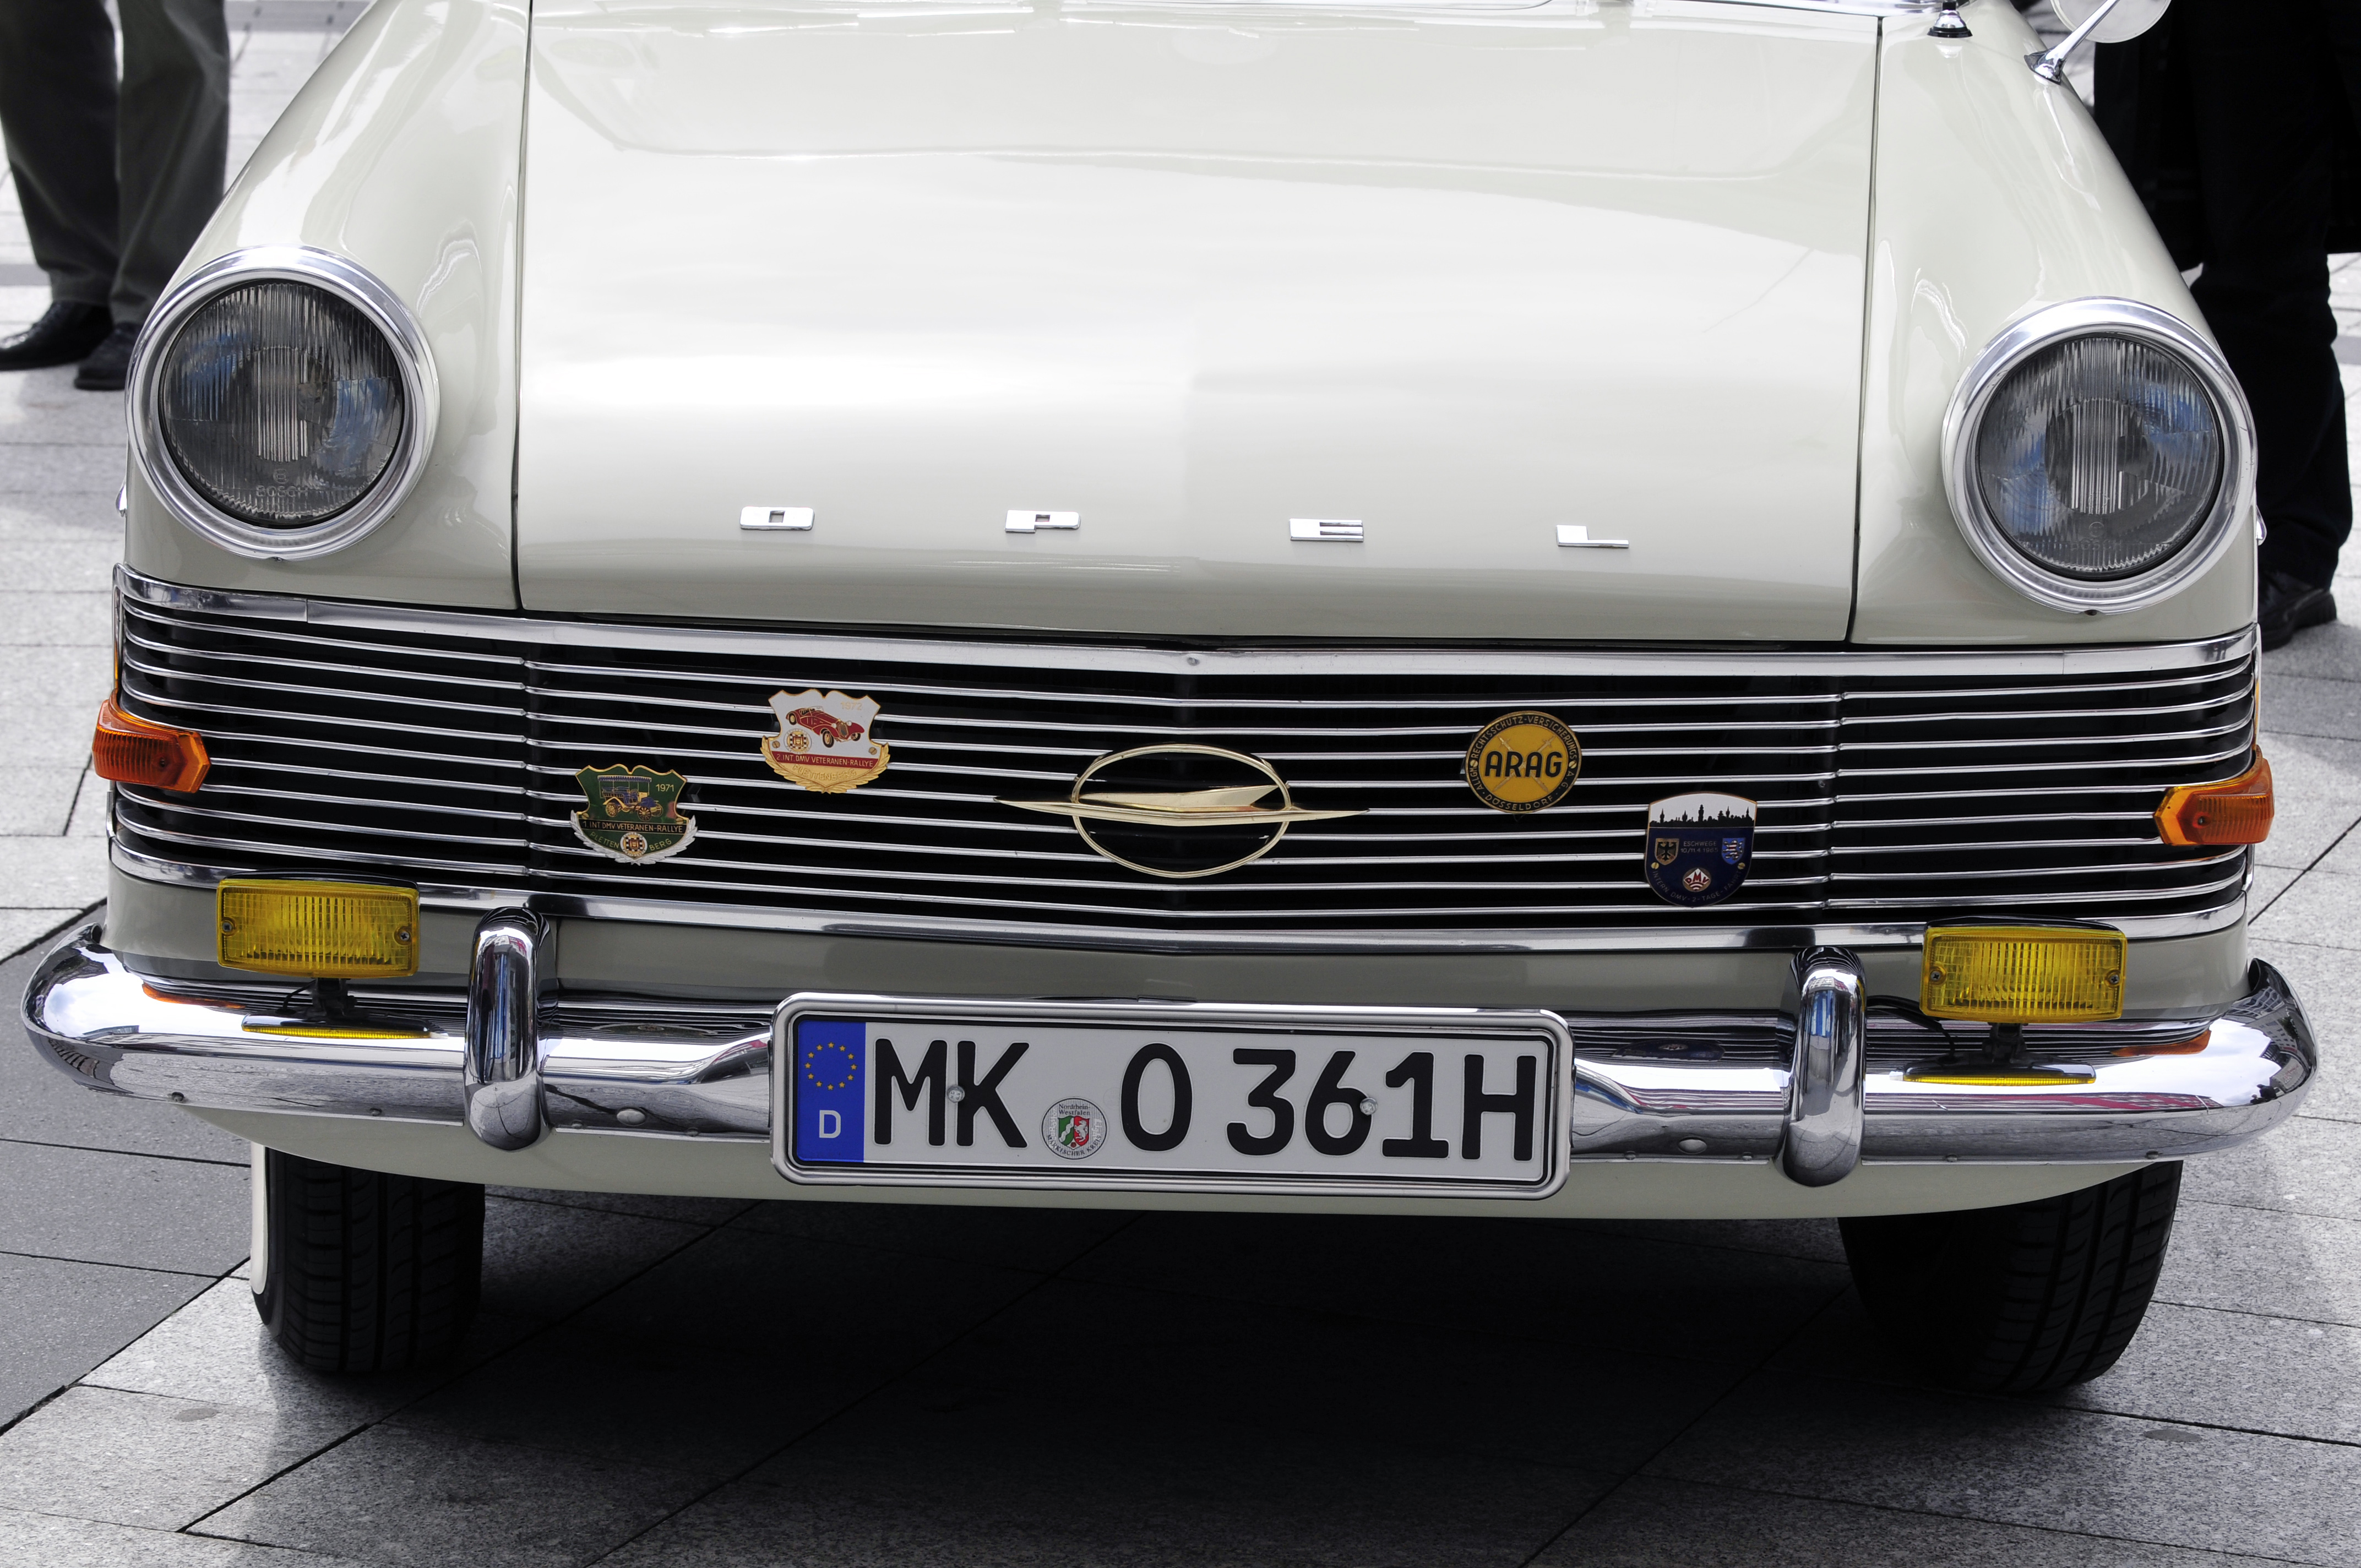 Opel Rekord P2 1700 | Flickr - Photo Sharing!